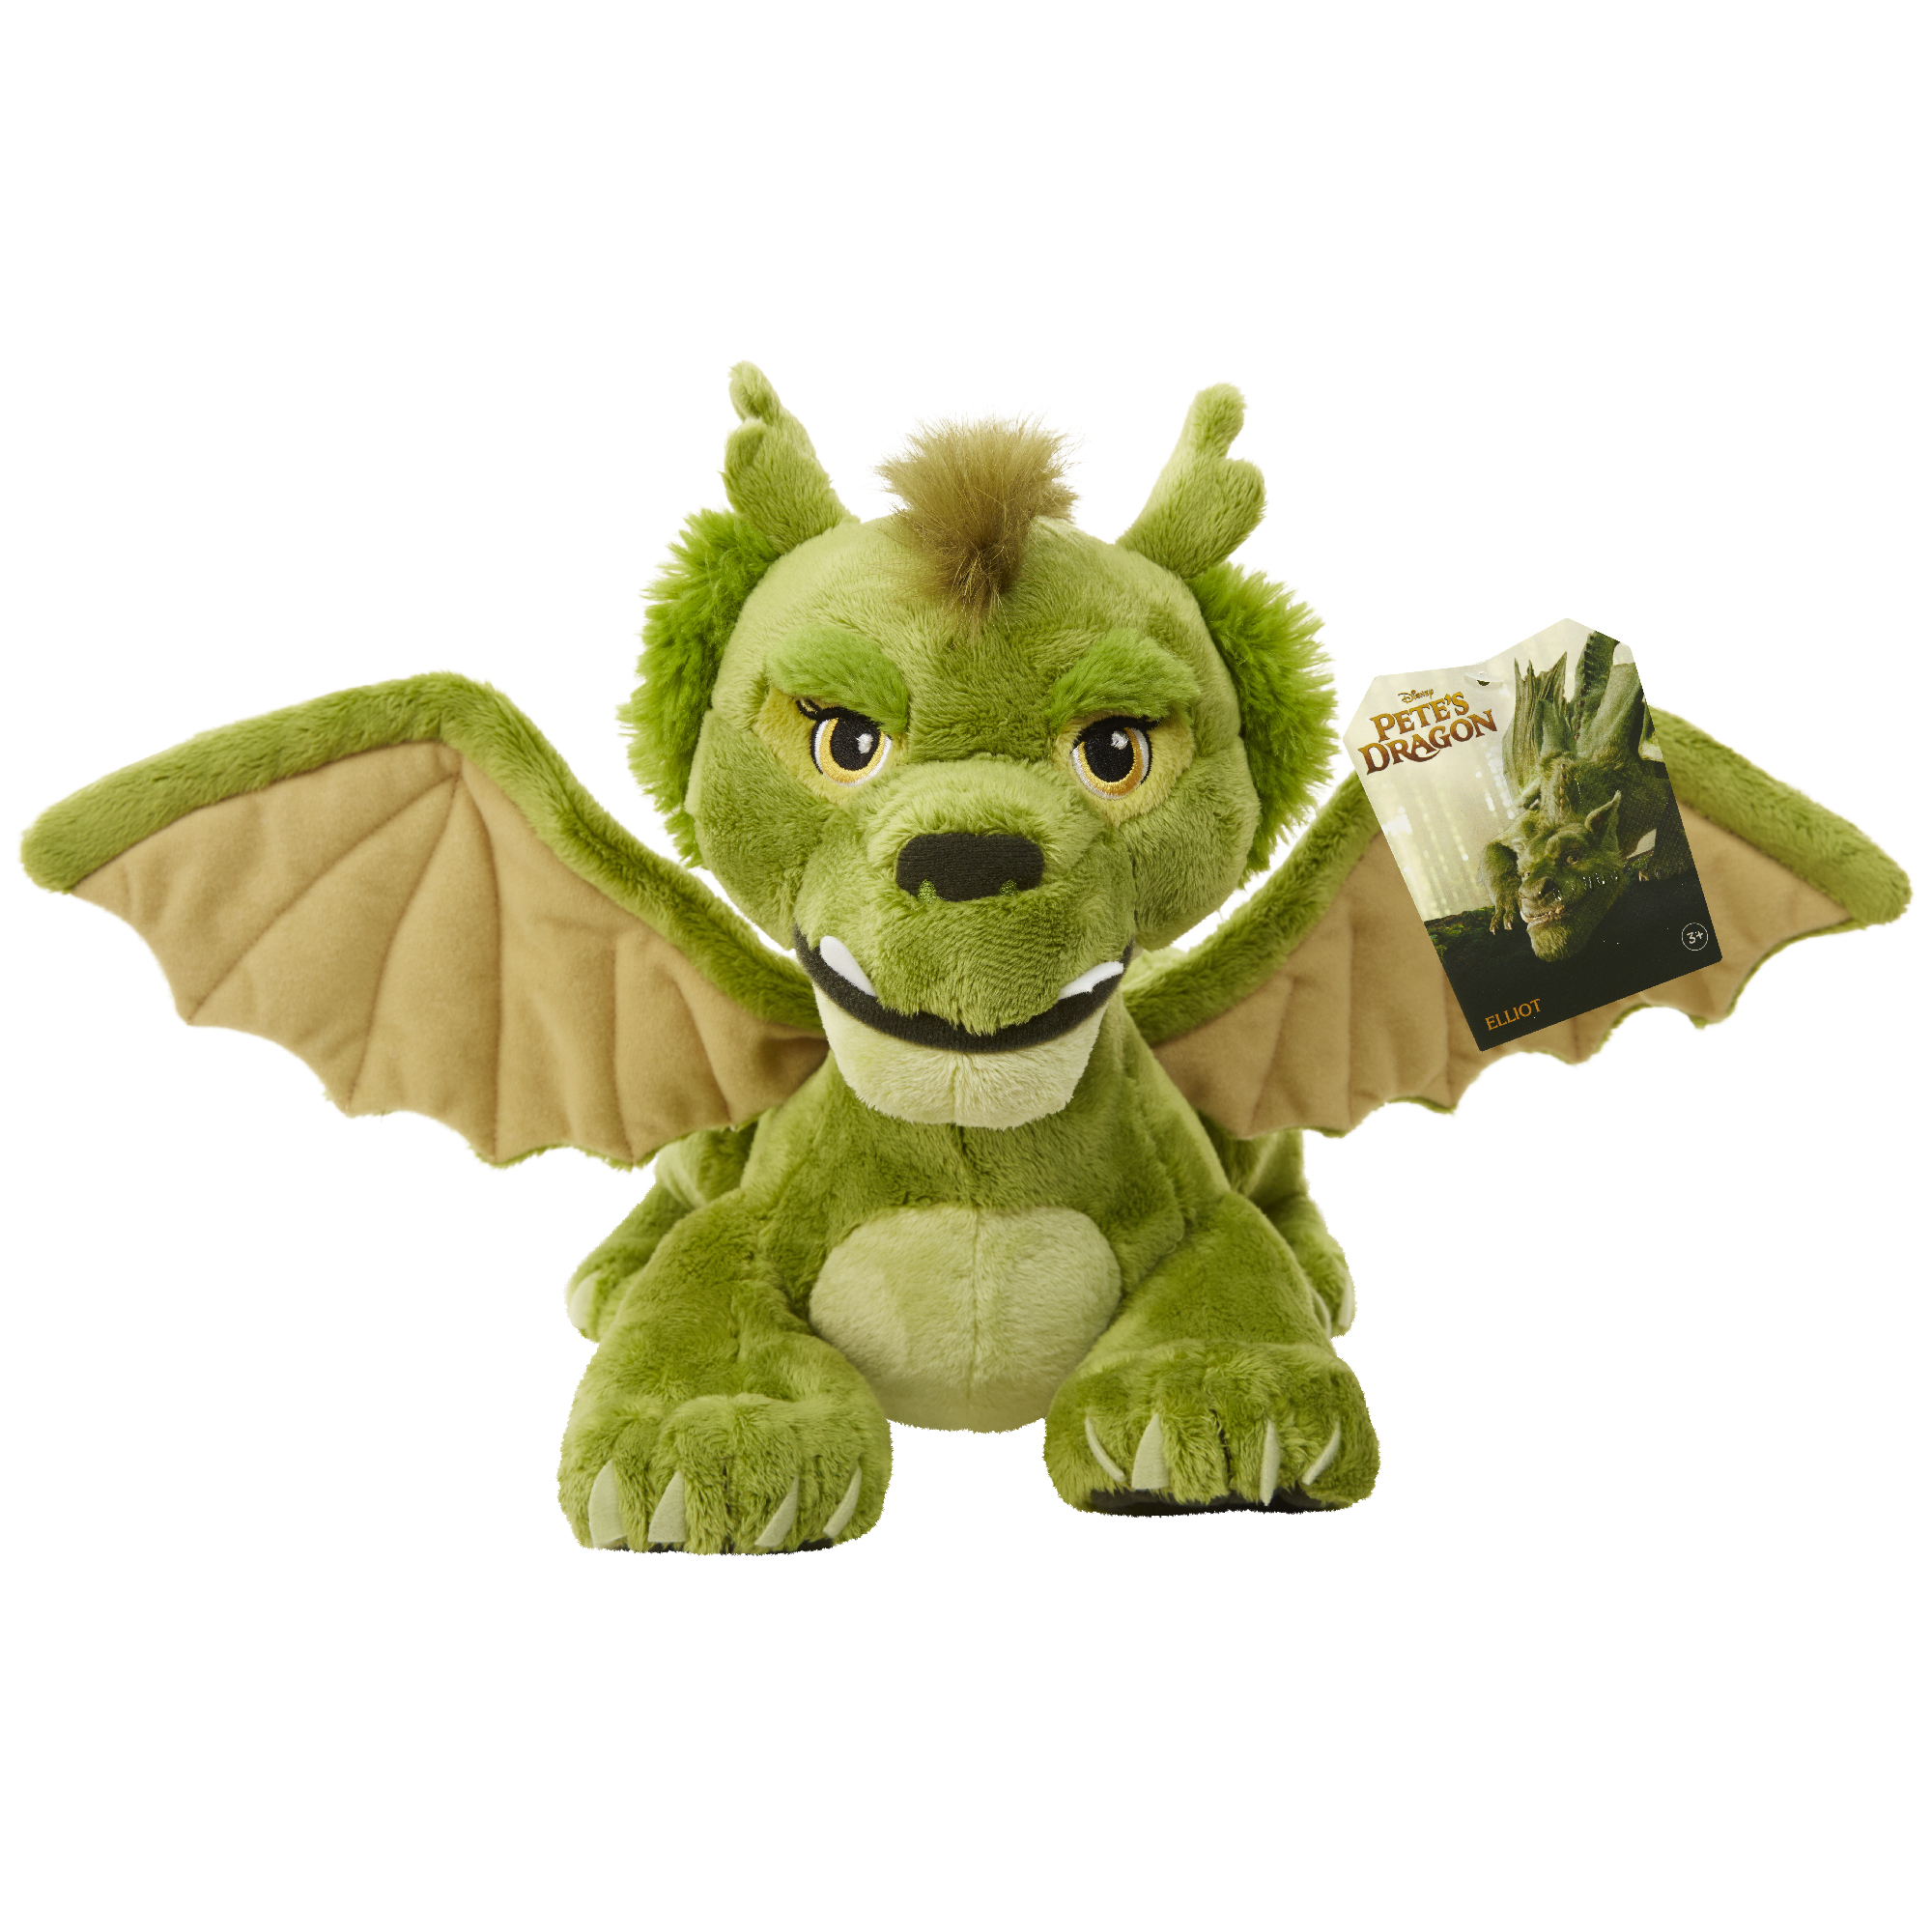 pete's dragon plush toy